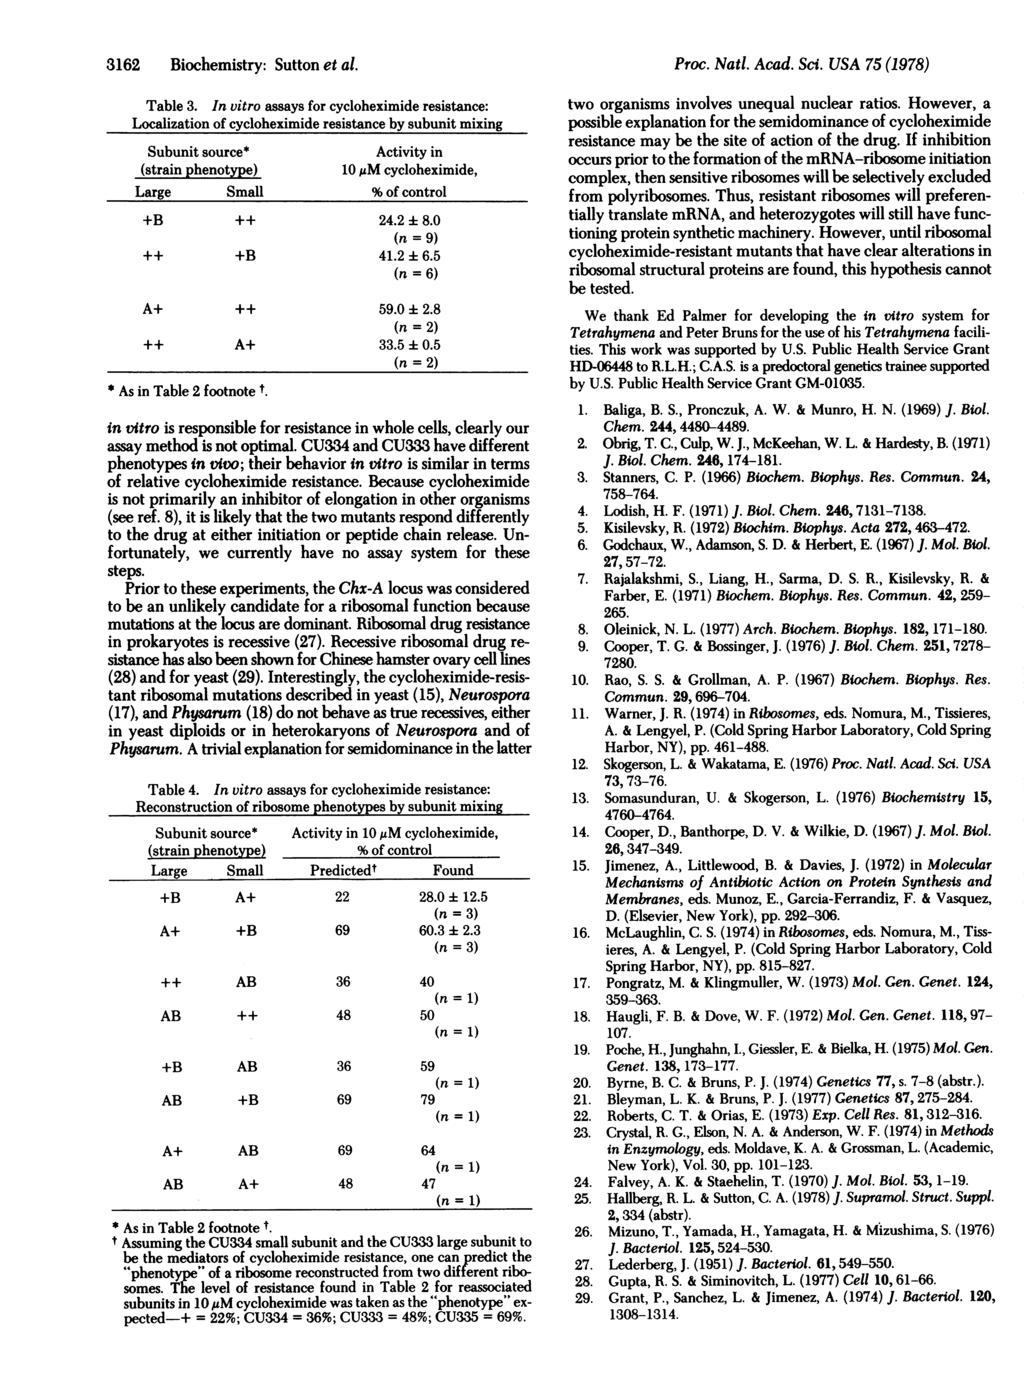 3162 Biohemistry: Sutton et al. Table 3.